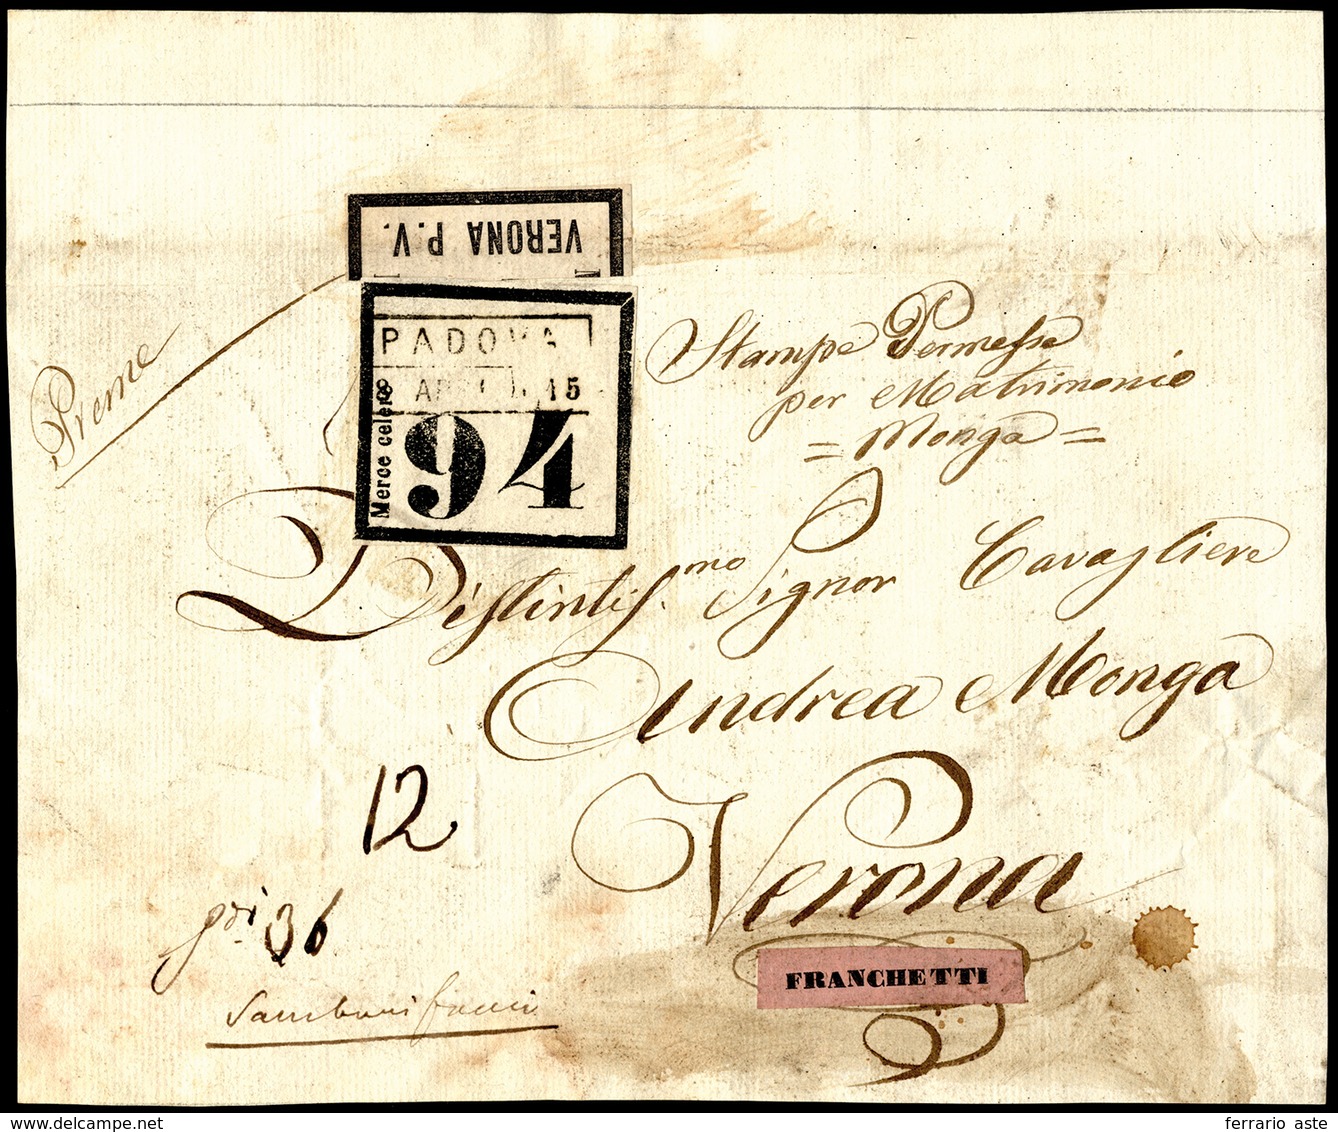 1850 Ca - Frontespizio Di Pacco Da Padova 15/4 A Verona, Etichetta Di "Merce Celere 94" Ed Etichetta... - Lombardo-Venetien